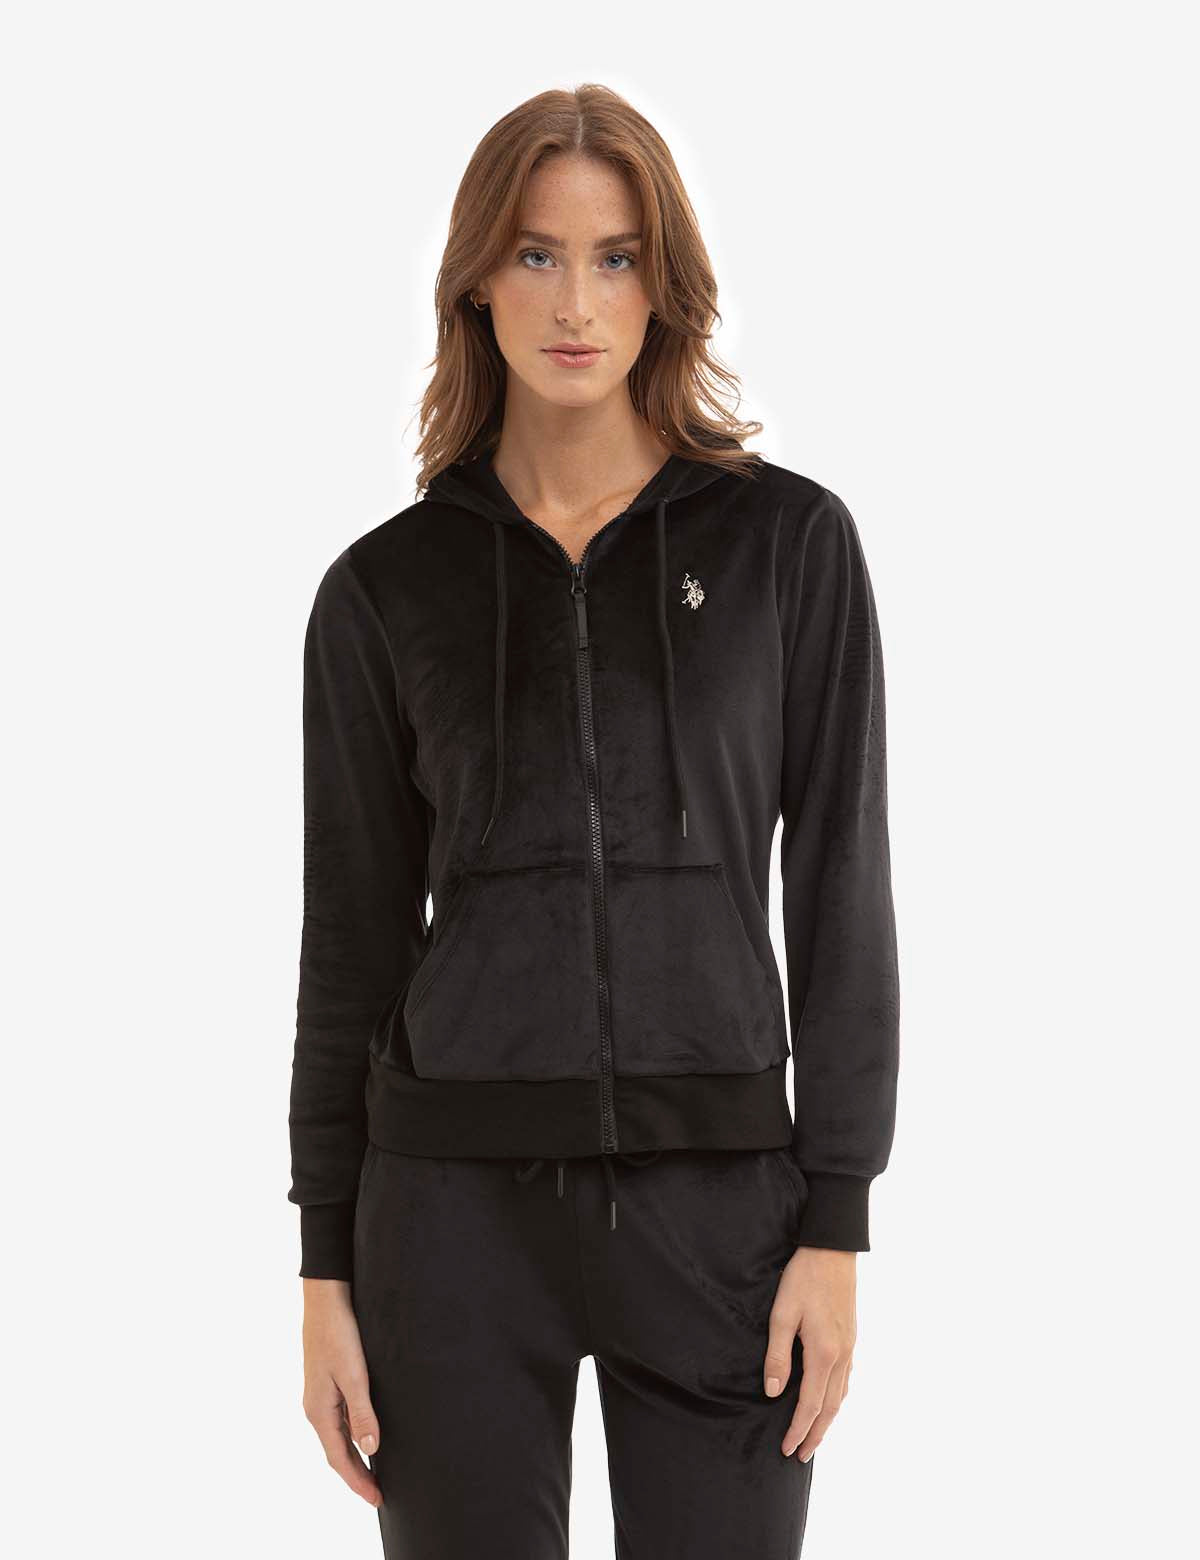 POLO RALPH LAUREN - Women's zip-through hoodie 